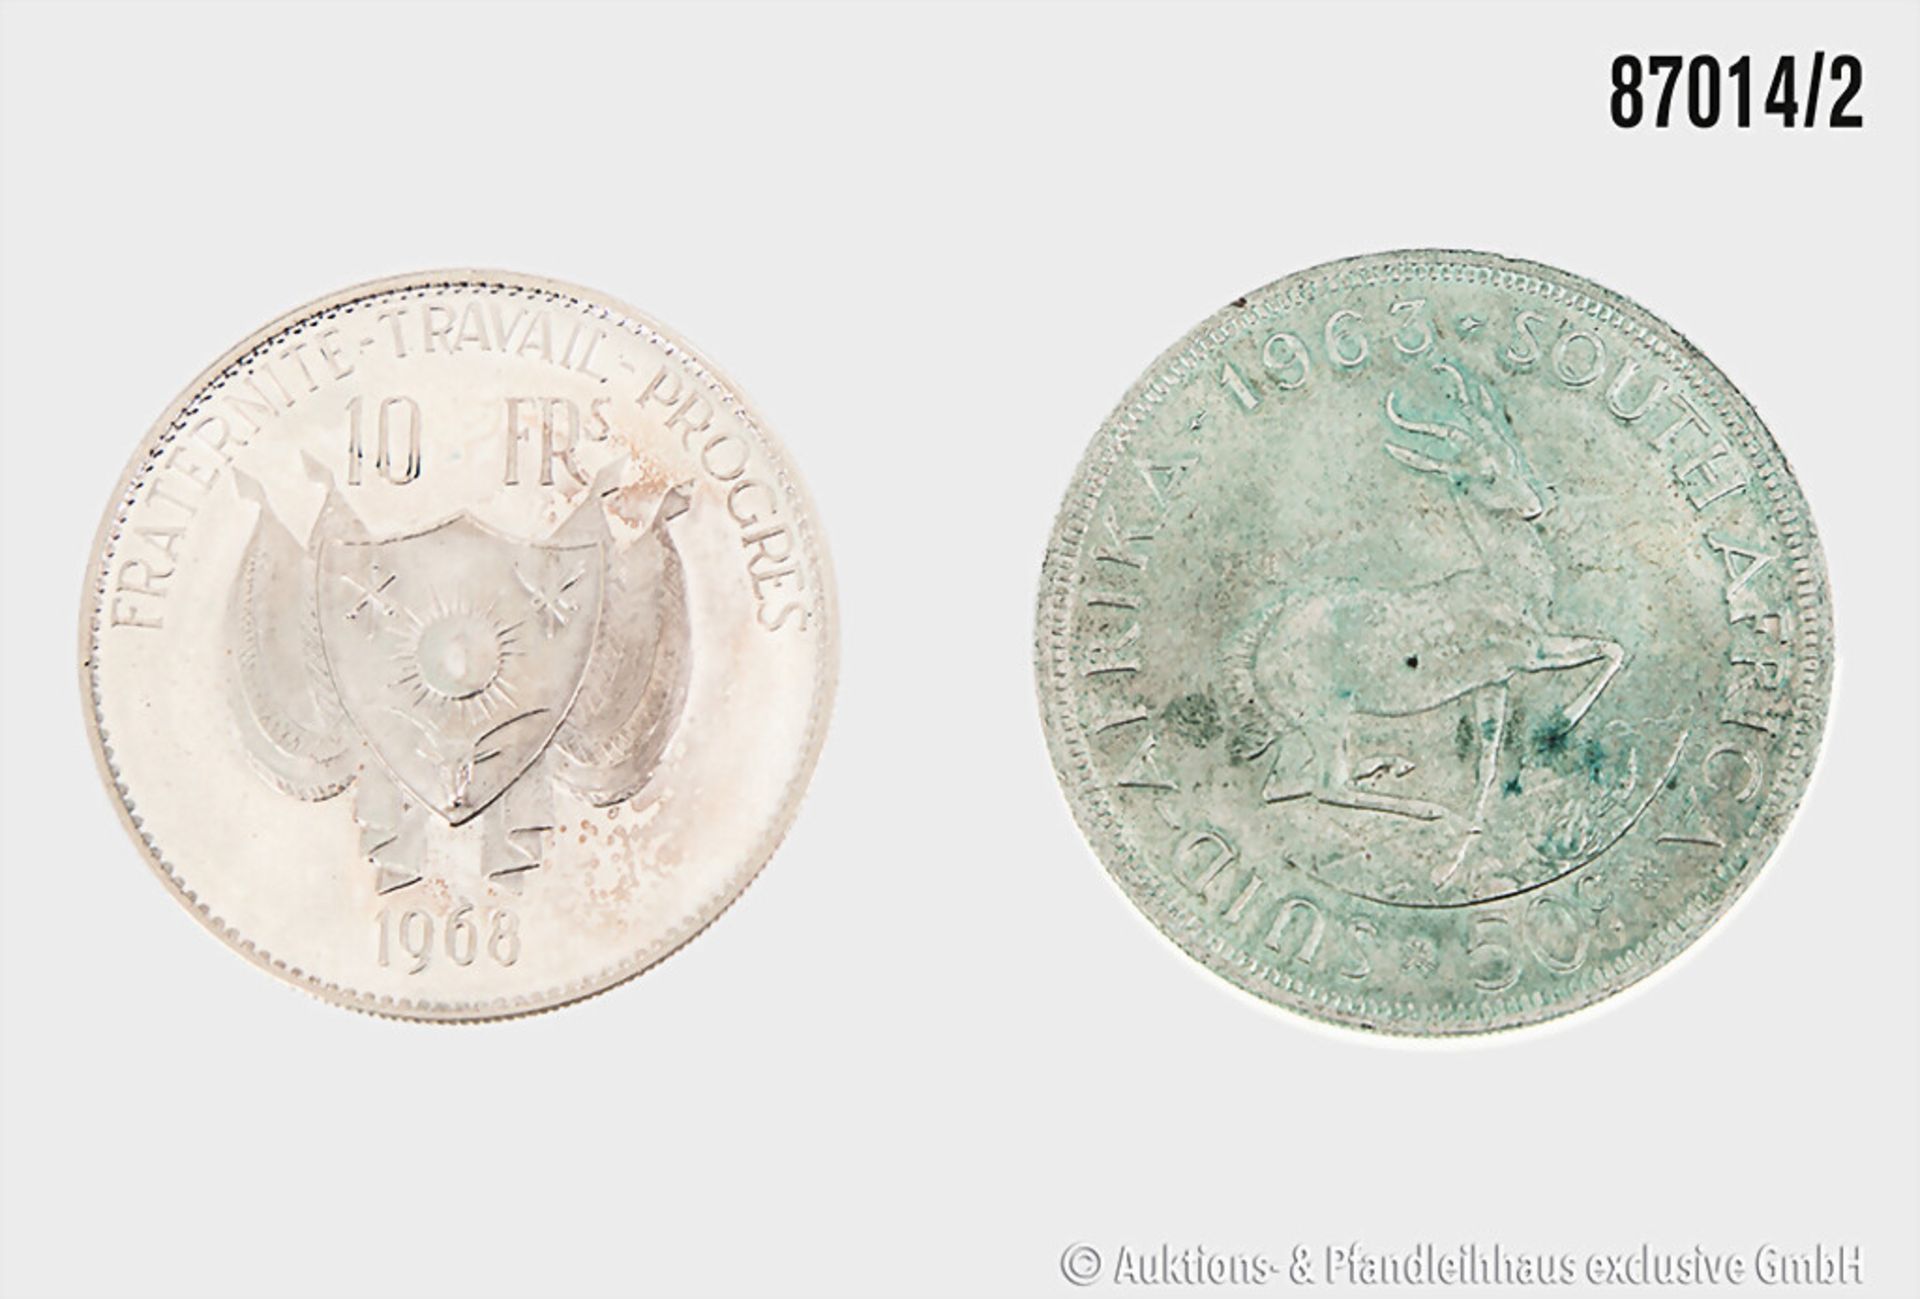 Konv. 2 Silbermünzen, 10 Franc Niger 1968 (Löwe) in vorzüglich und 50 Cent South Africa ... - Bild 2 aus 2